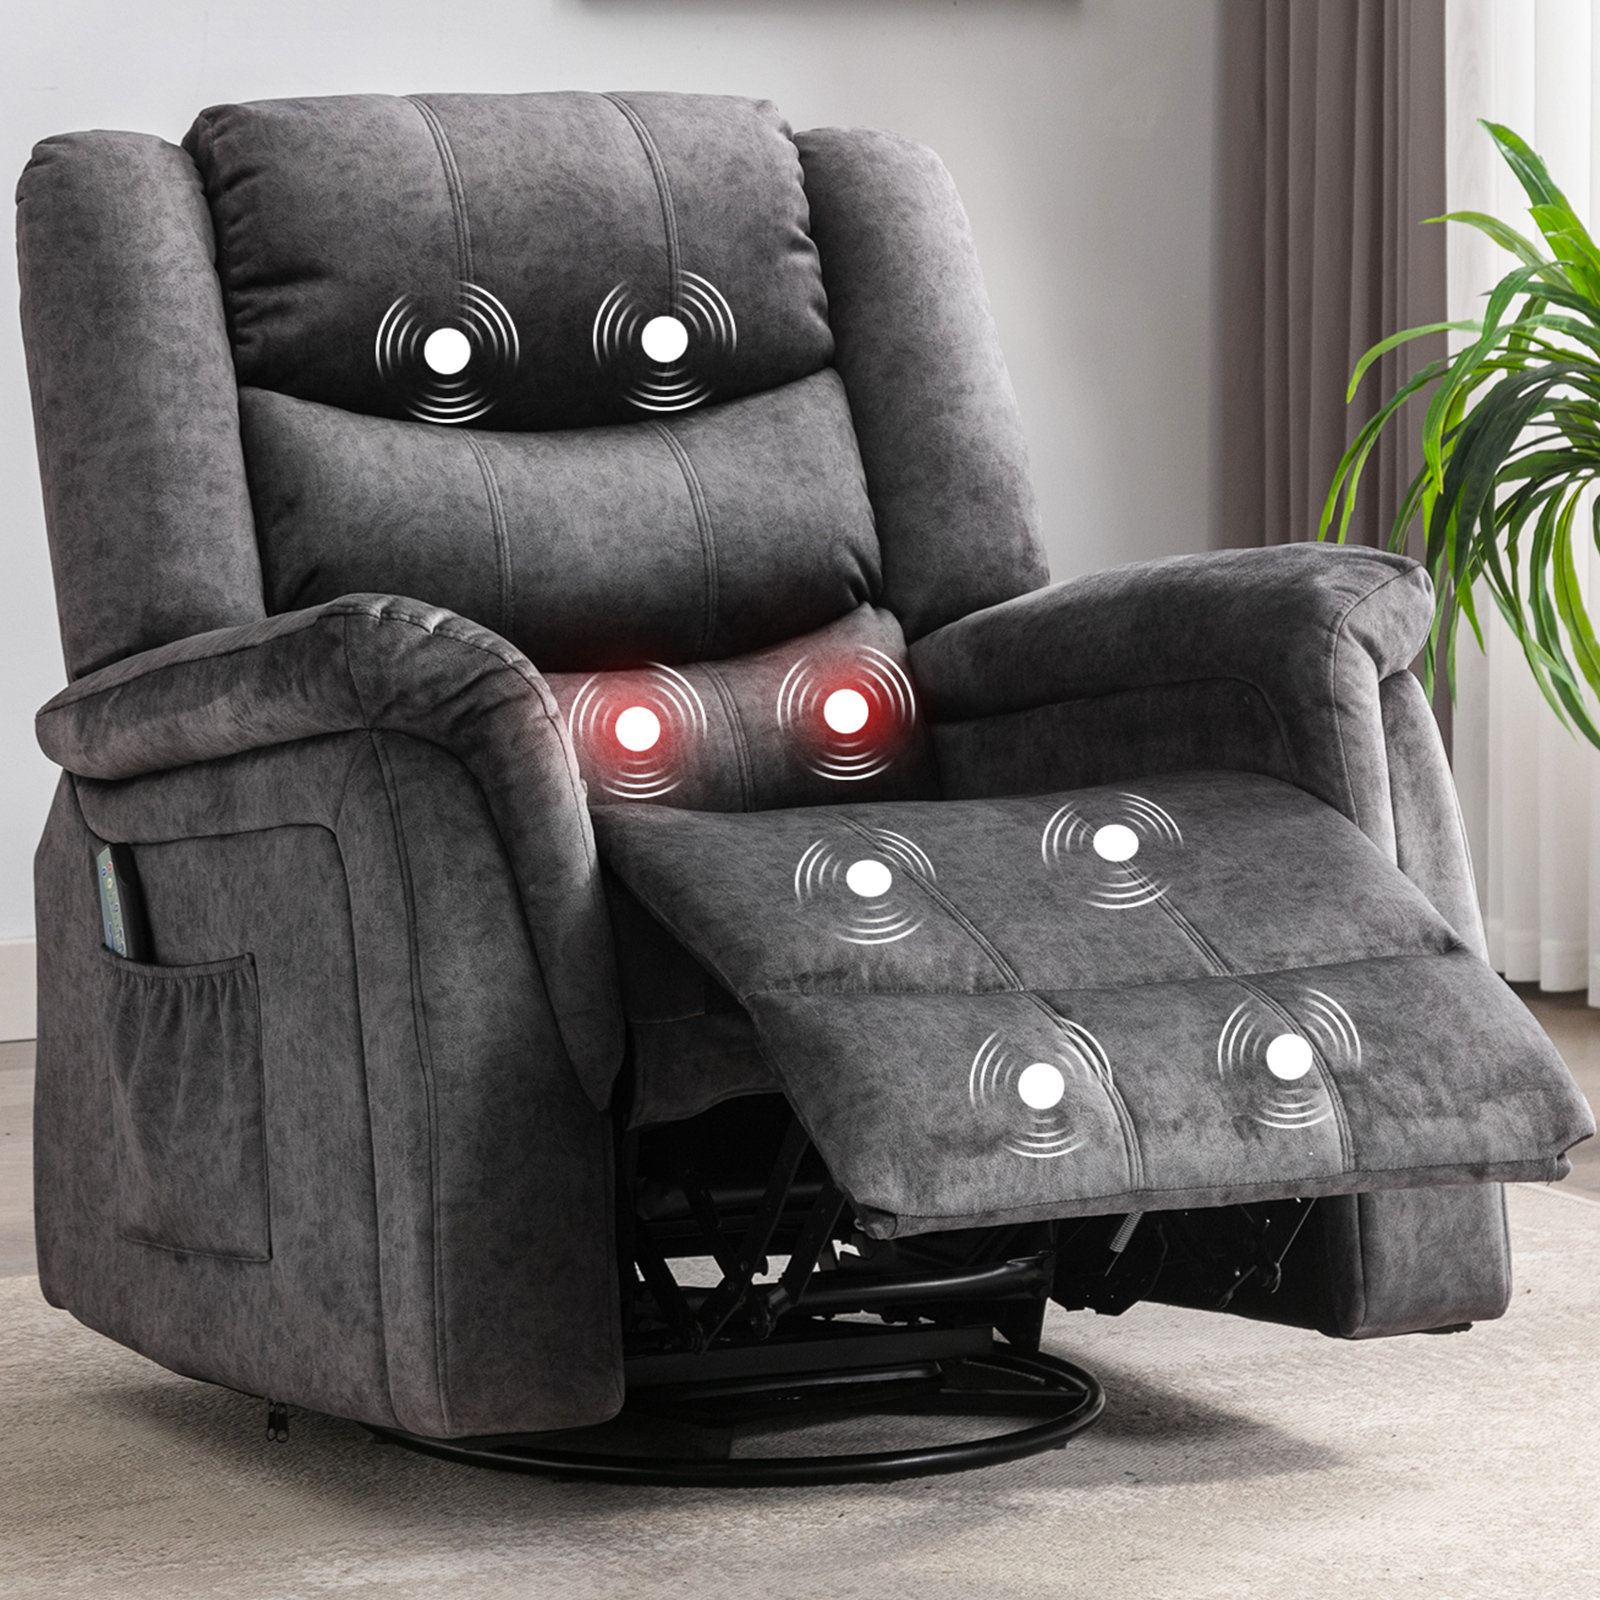 https://assets.wfcdn.com/im/57167208/compr-r85/2194/219492072/falisha-upholstered-heated-massage-chair.jpg